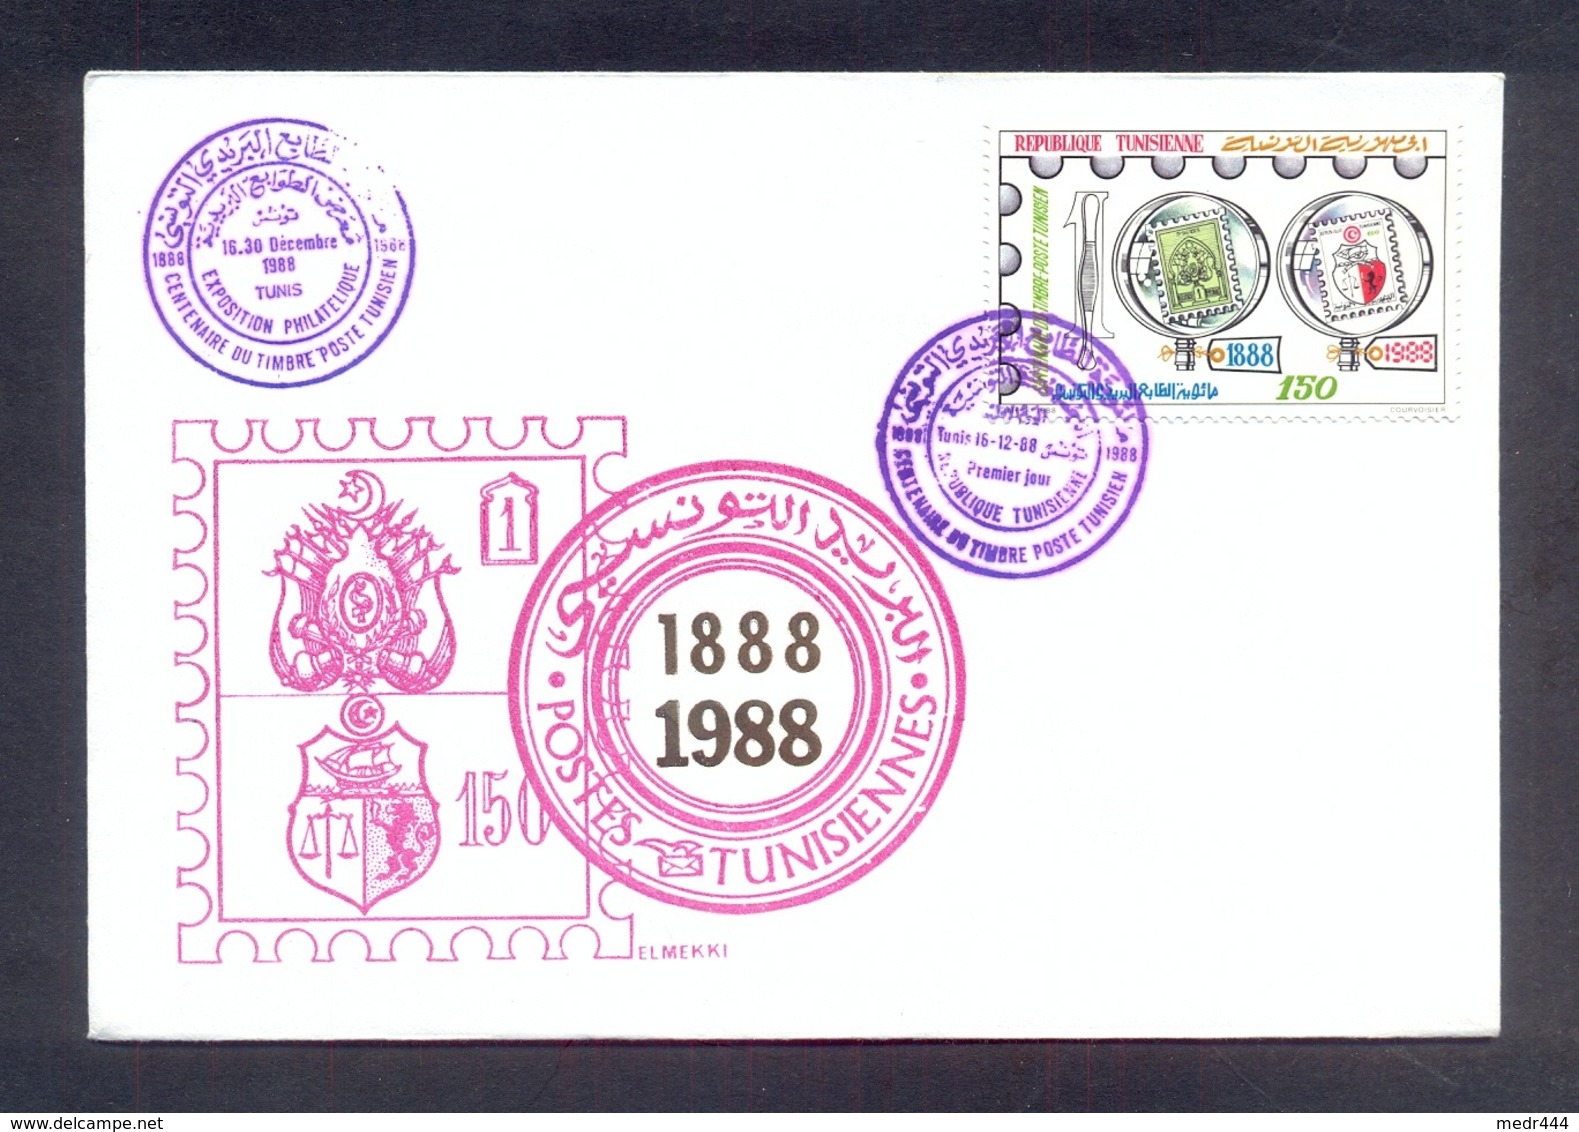 Tunisia/Tunisie 1988 - FDC - Tunisian Postal Day Centennial - Tunisia